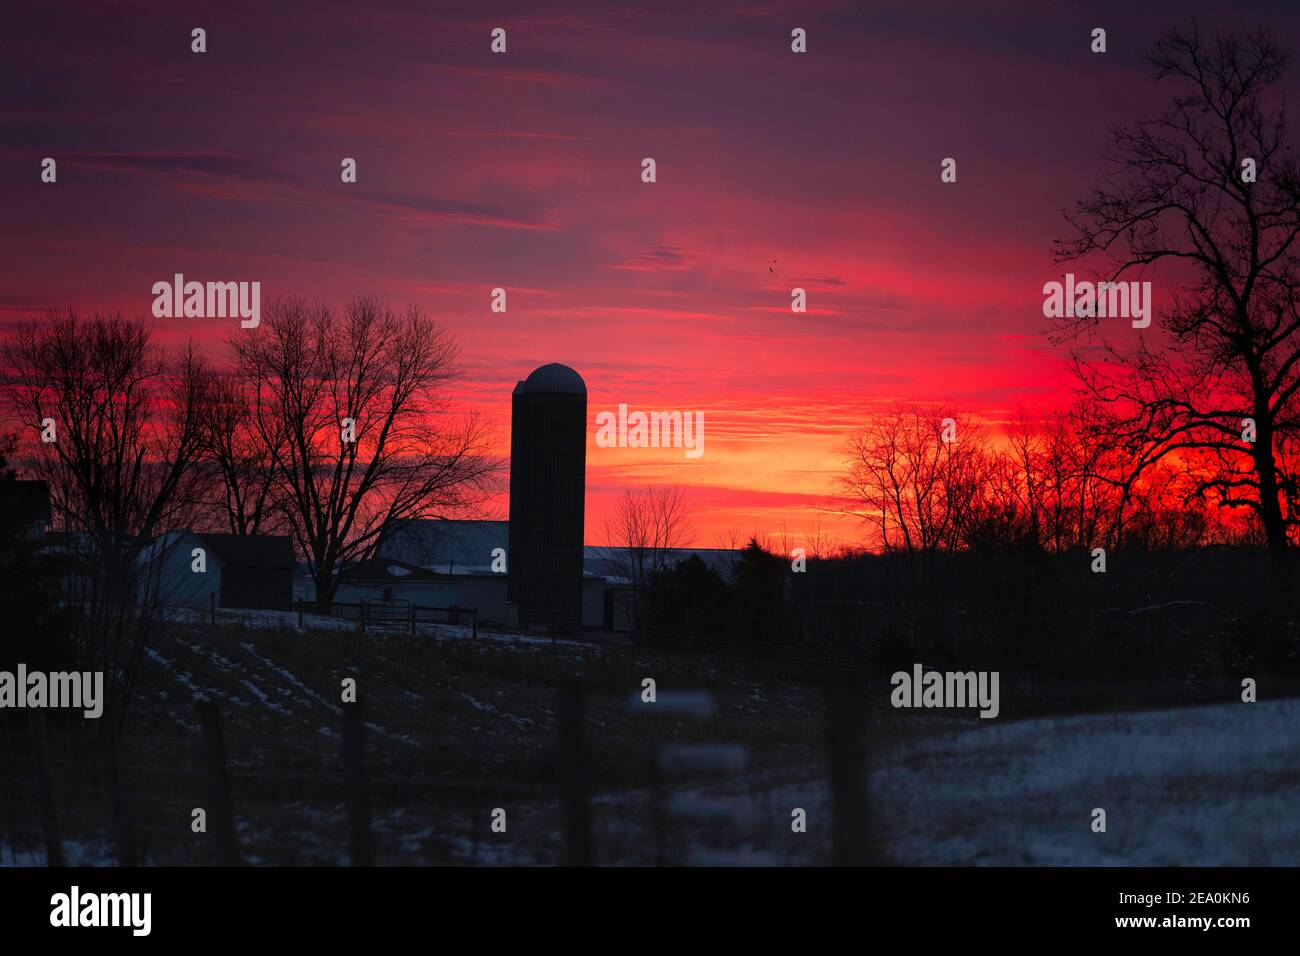 Ein Sonnenaufgangshimmel über einer kleinen Indiana Farm. Der Himmel besteht aus Rot, Gelb, Violett, Orangen und Blau. Ein Silo ist prominent gekennzeichnet. Stockfoto